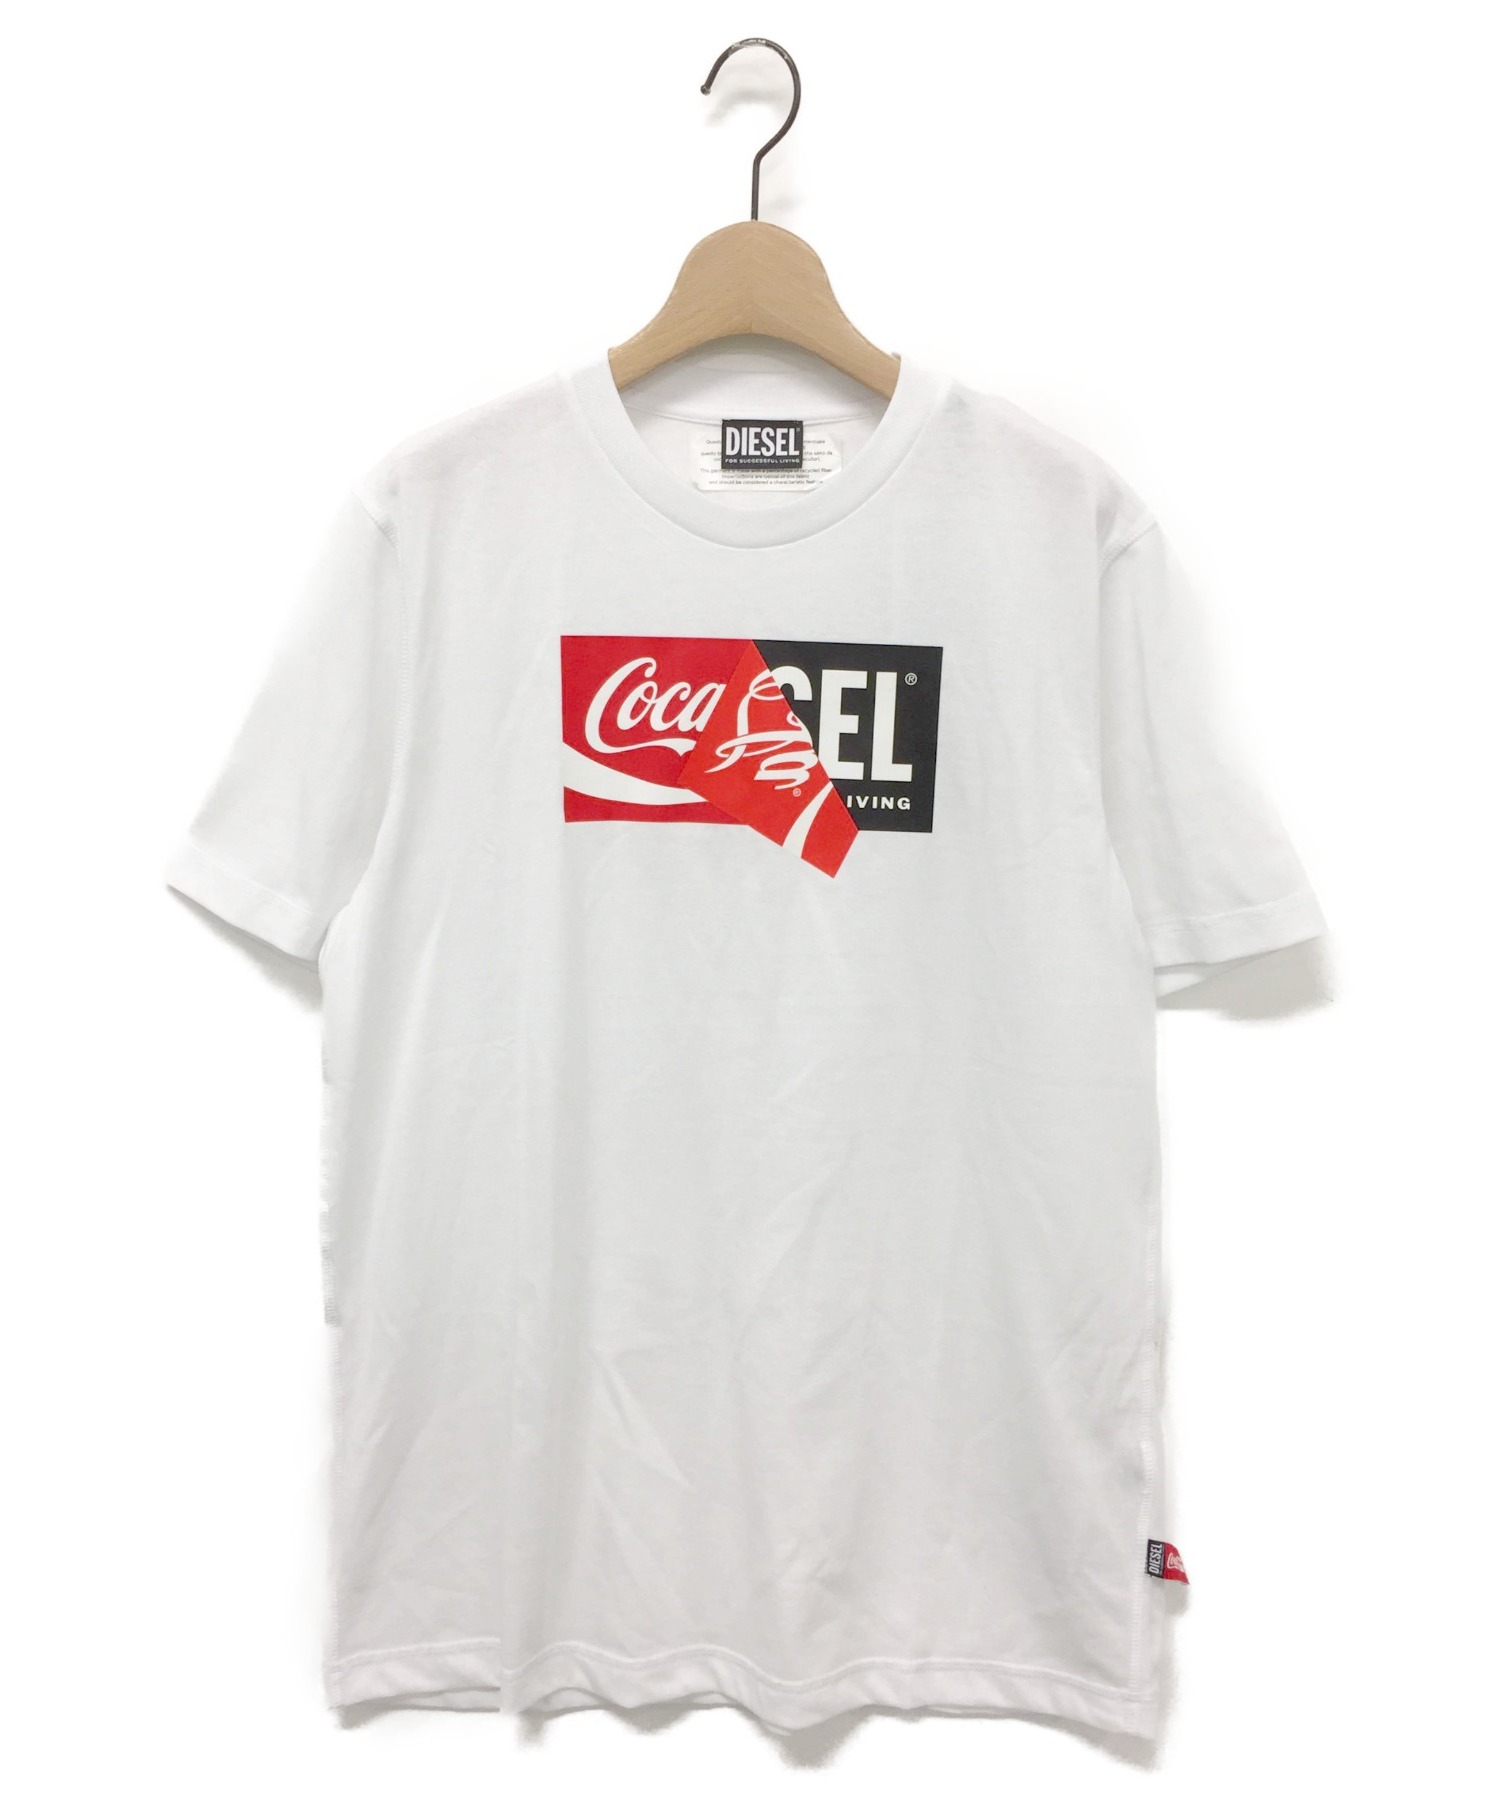 DIESEL Tシャツ Coca-Cola コカコーラ コラボ ホワイト XS